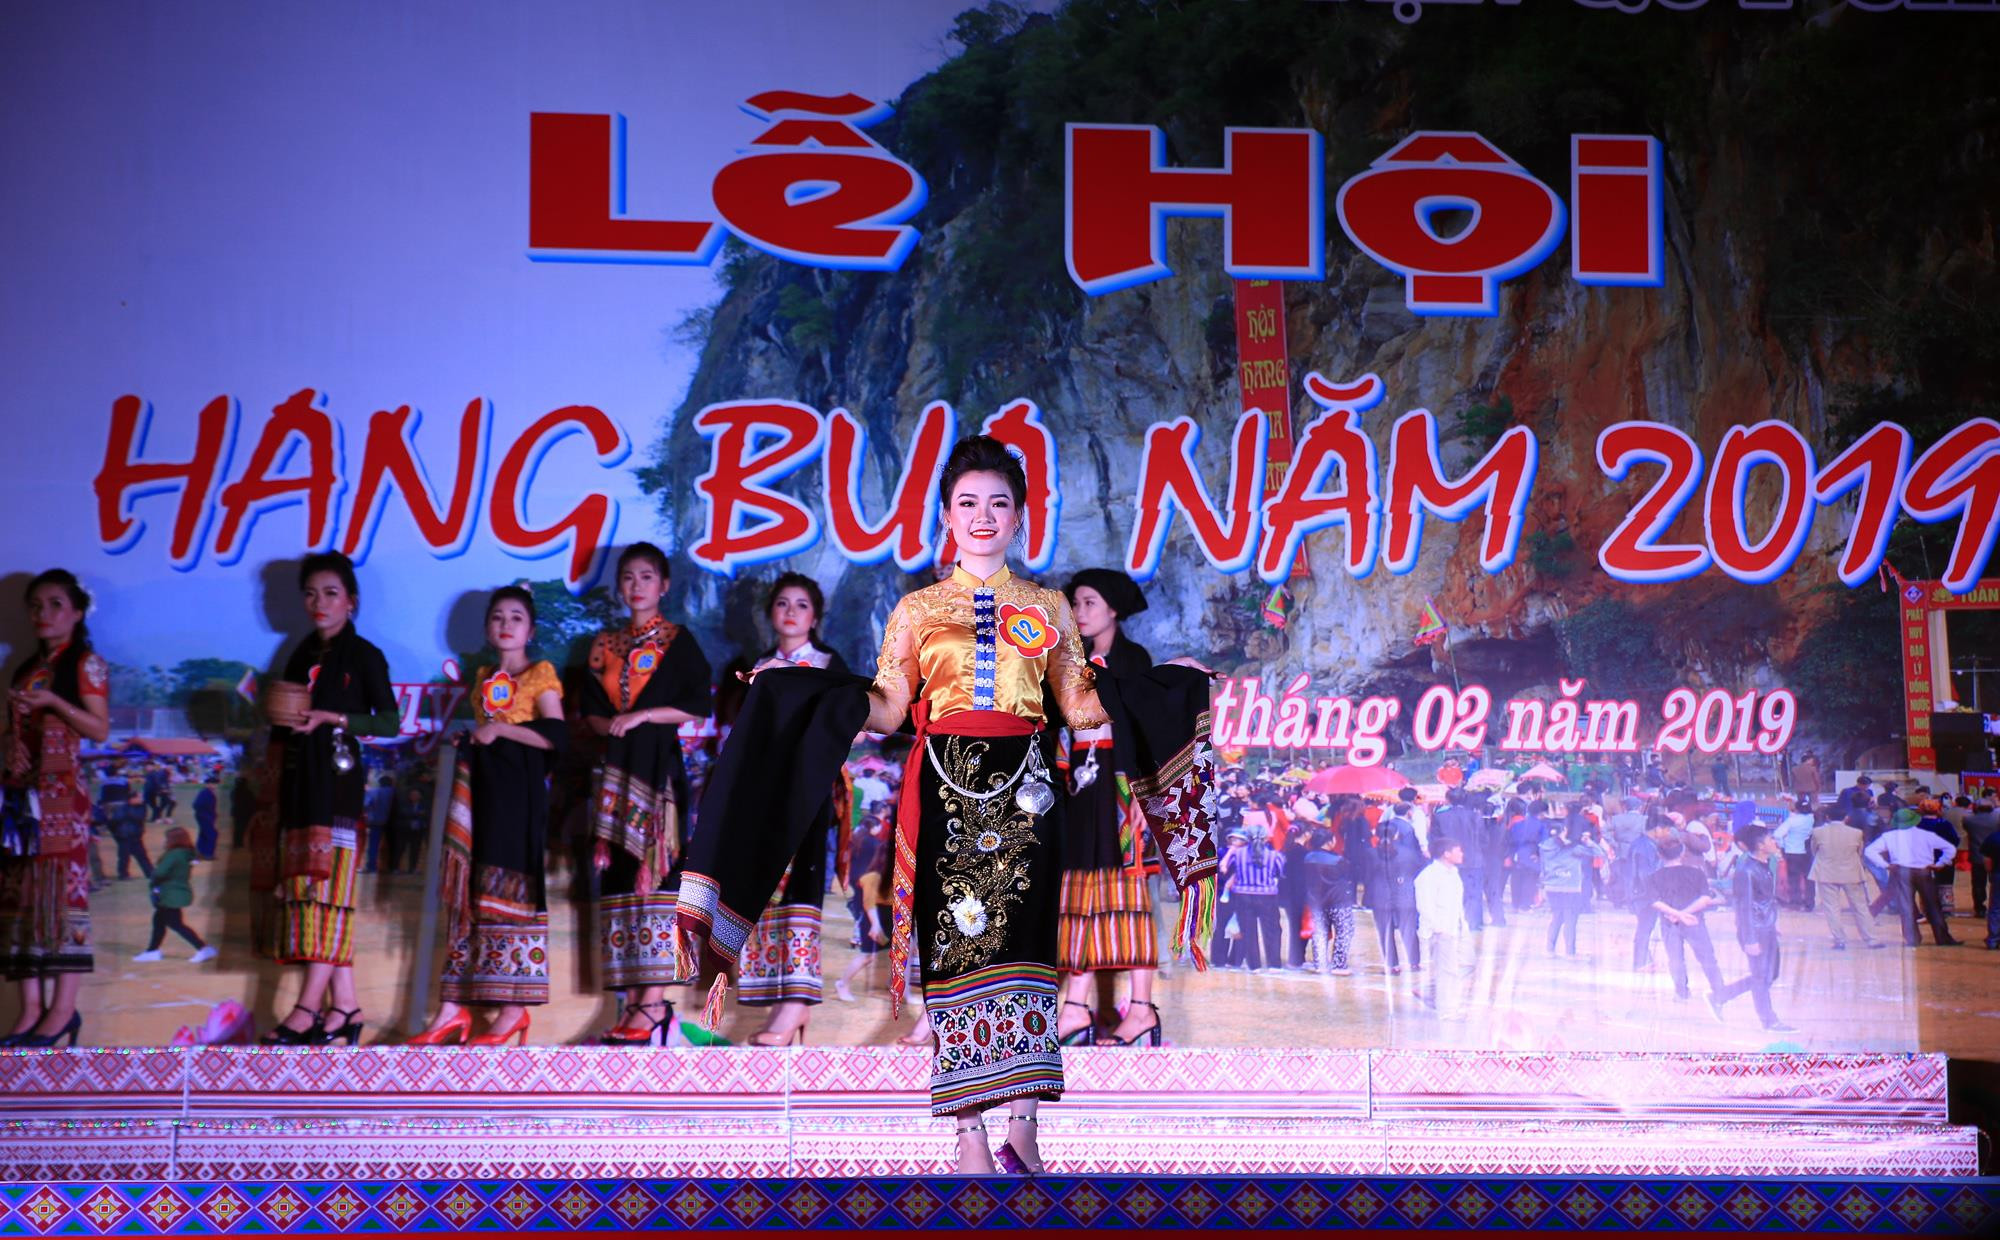 Phần trình diễn trang phục dân tộc của thí sinh mang SBD 12 Lữ Thùy Linh. Đại diện đến từ xã Châu Hội là thí sinh đạt giải nhì trong đêm thi người đẹp Hang Bua 2019. 